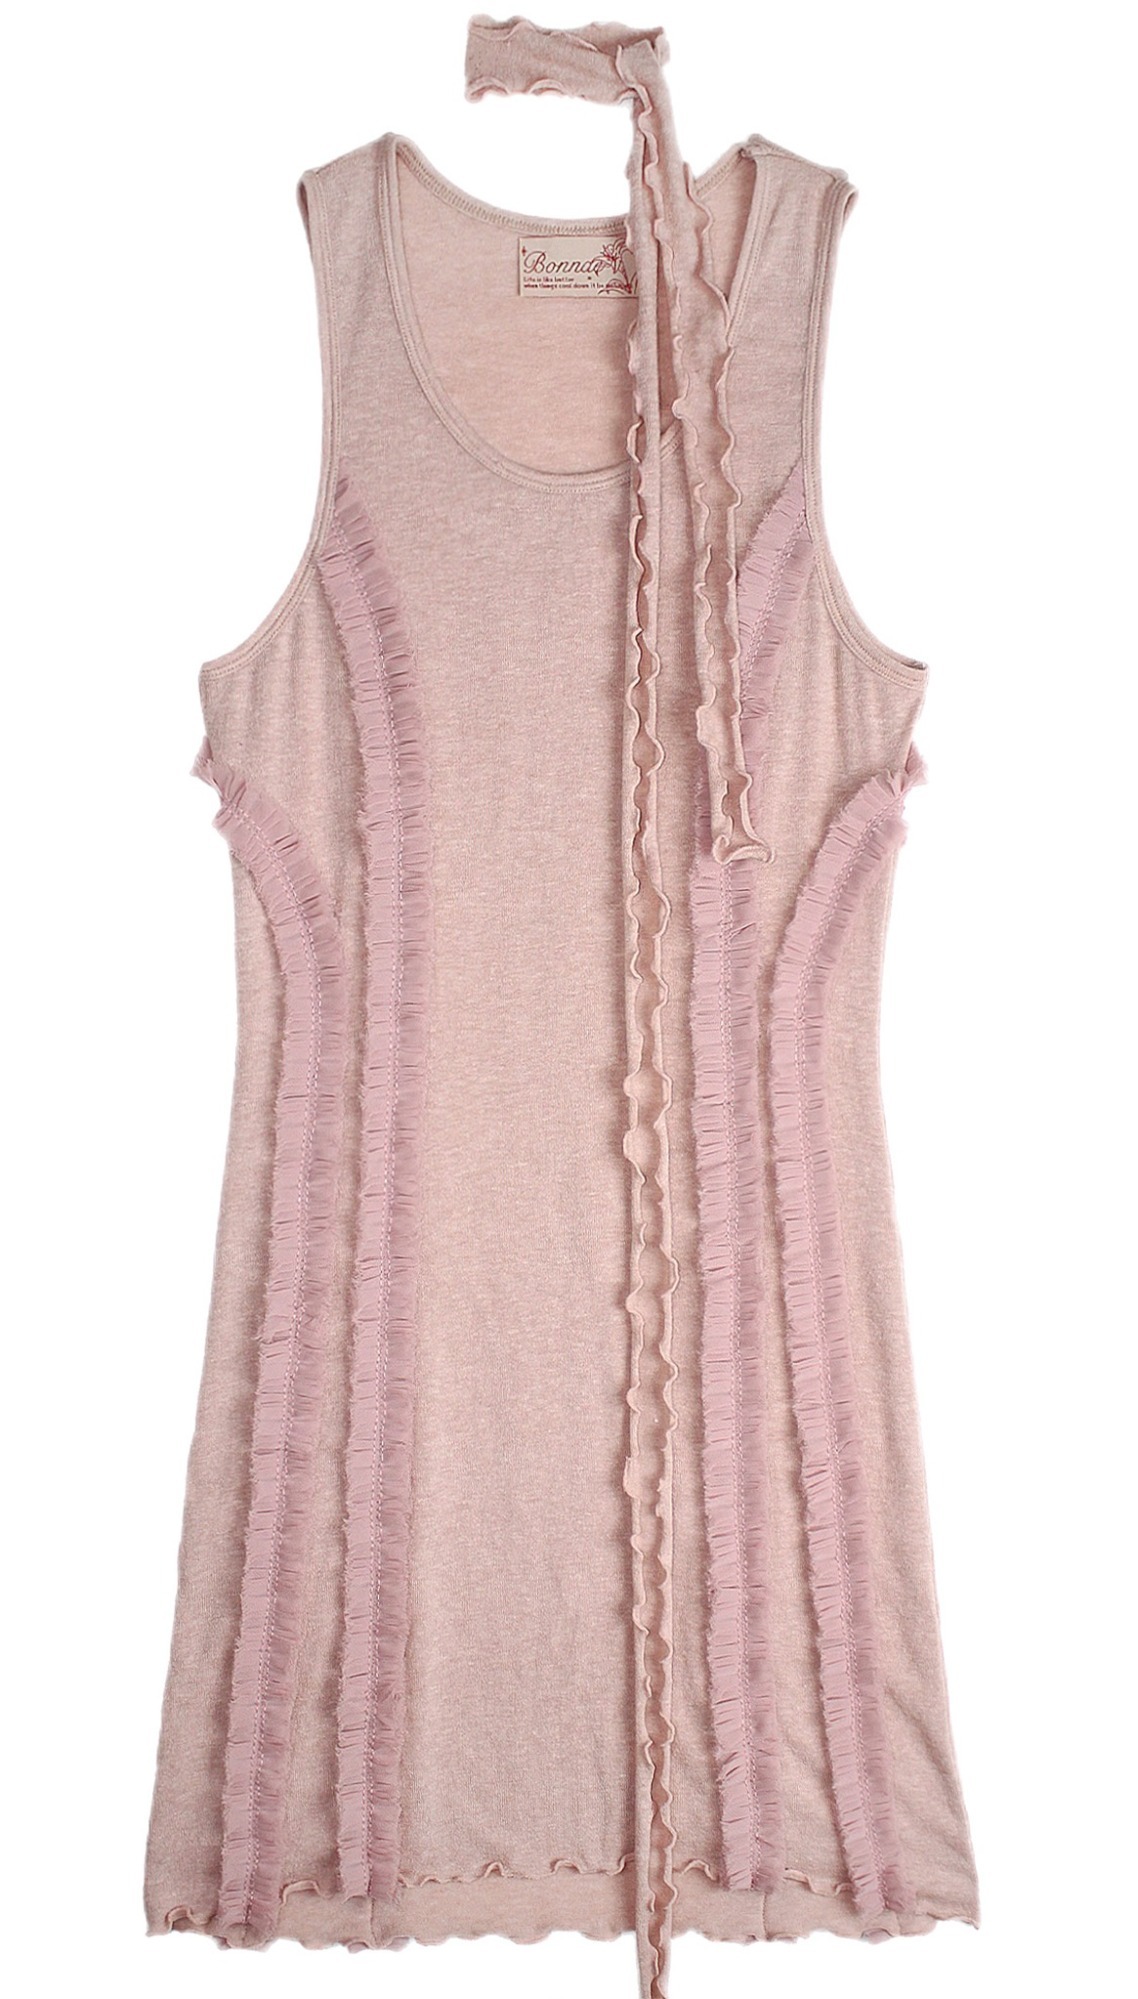 Frill lace dress (Pink)